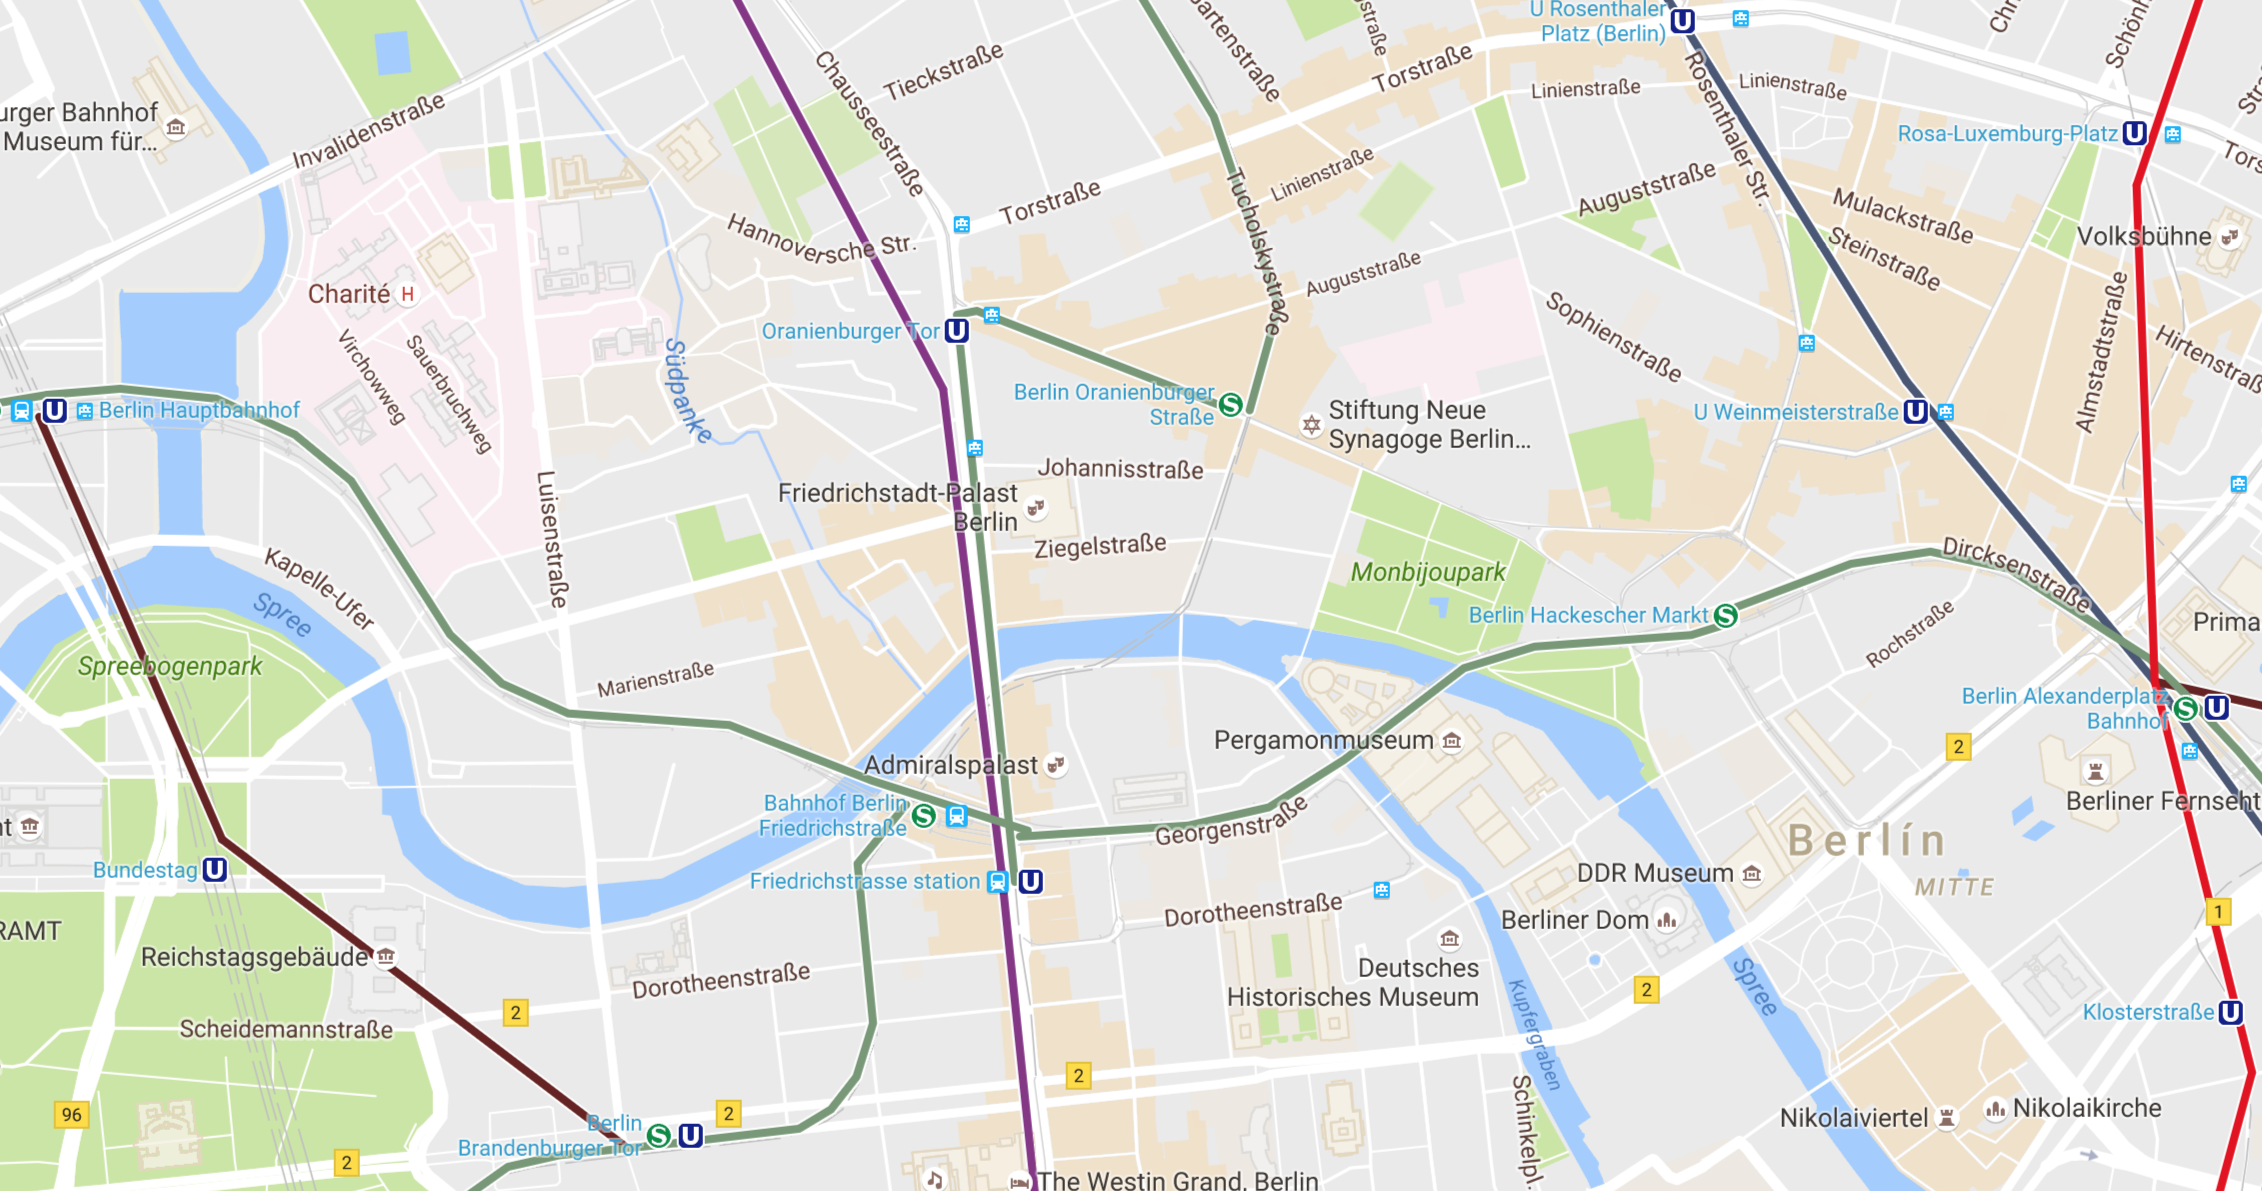 Berlin in Google Maps